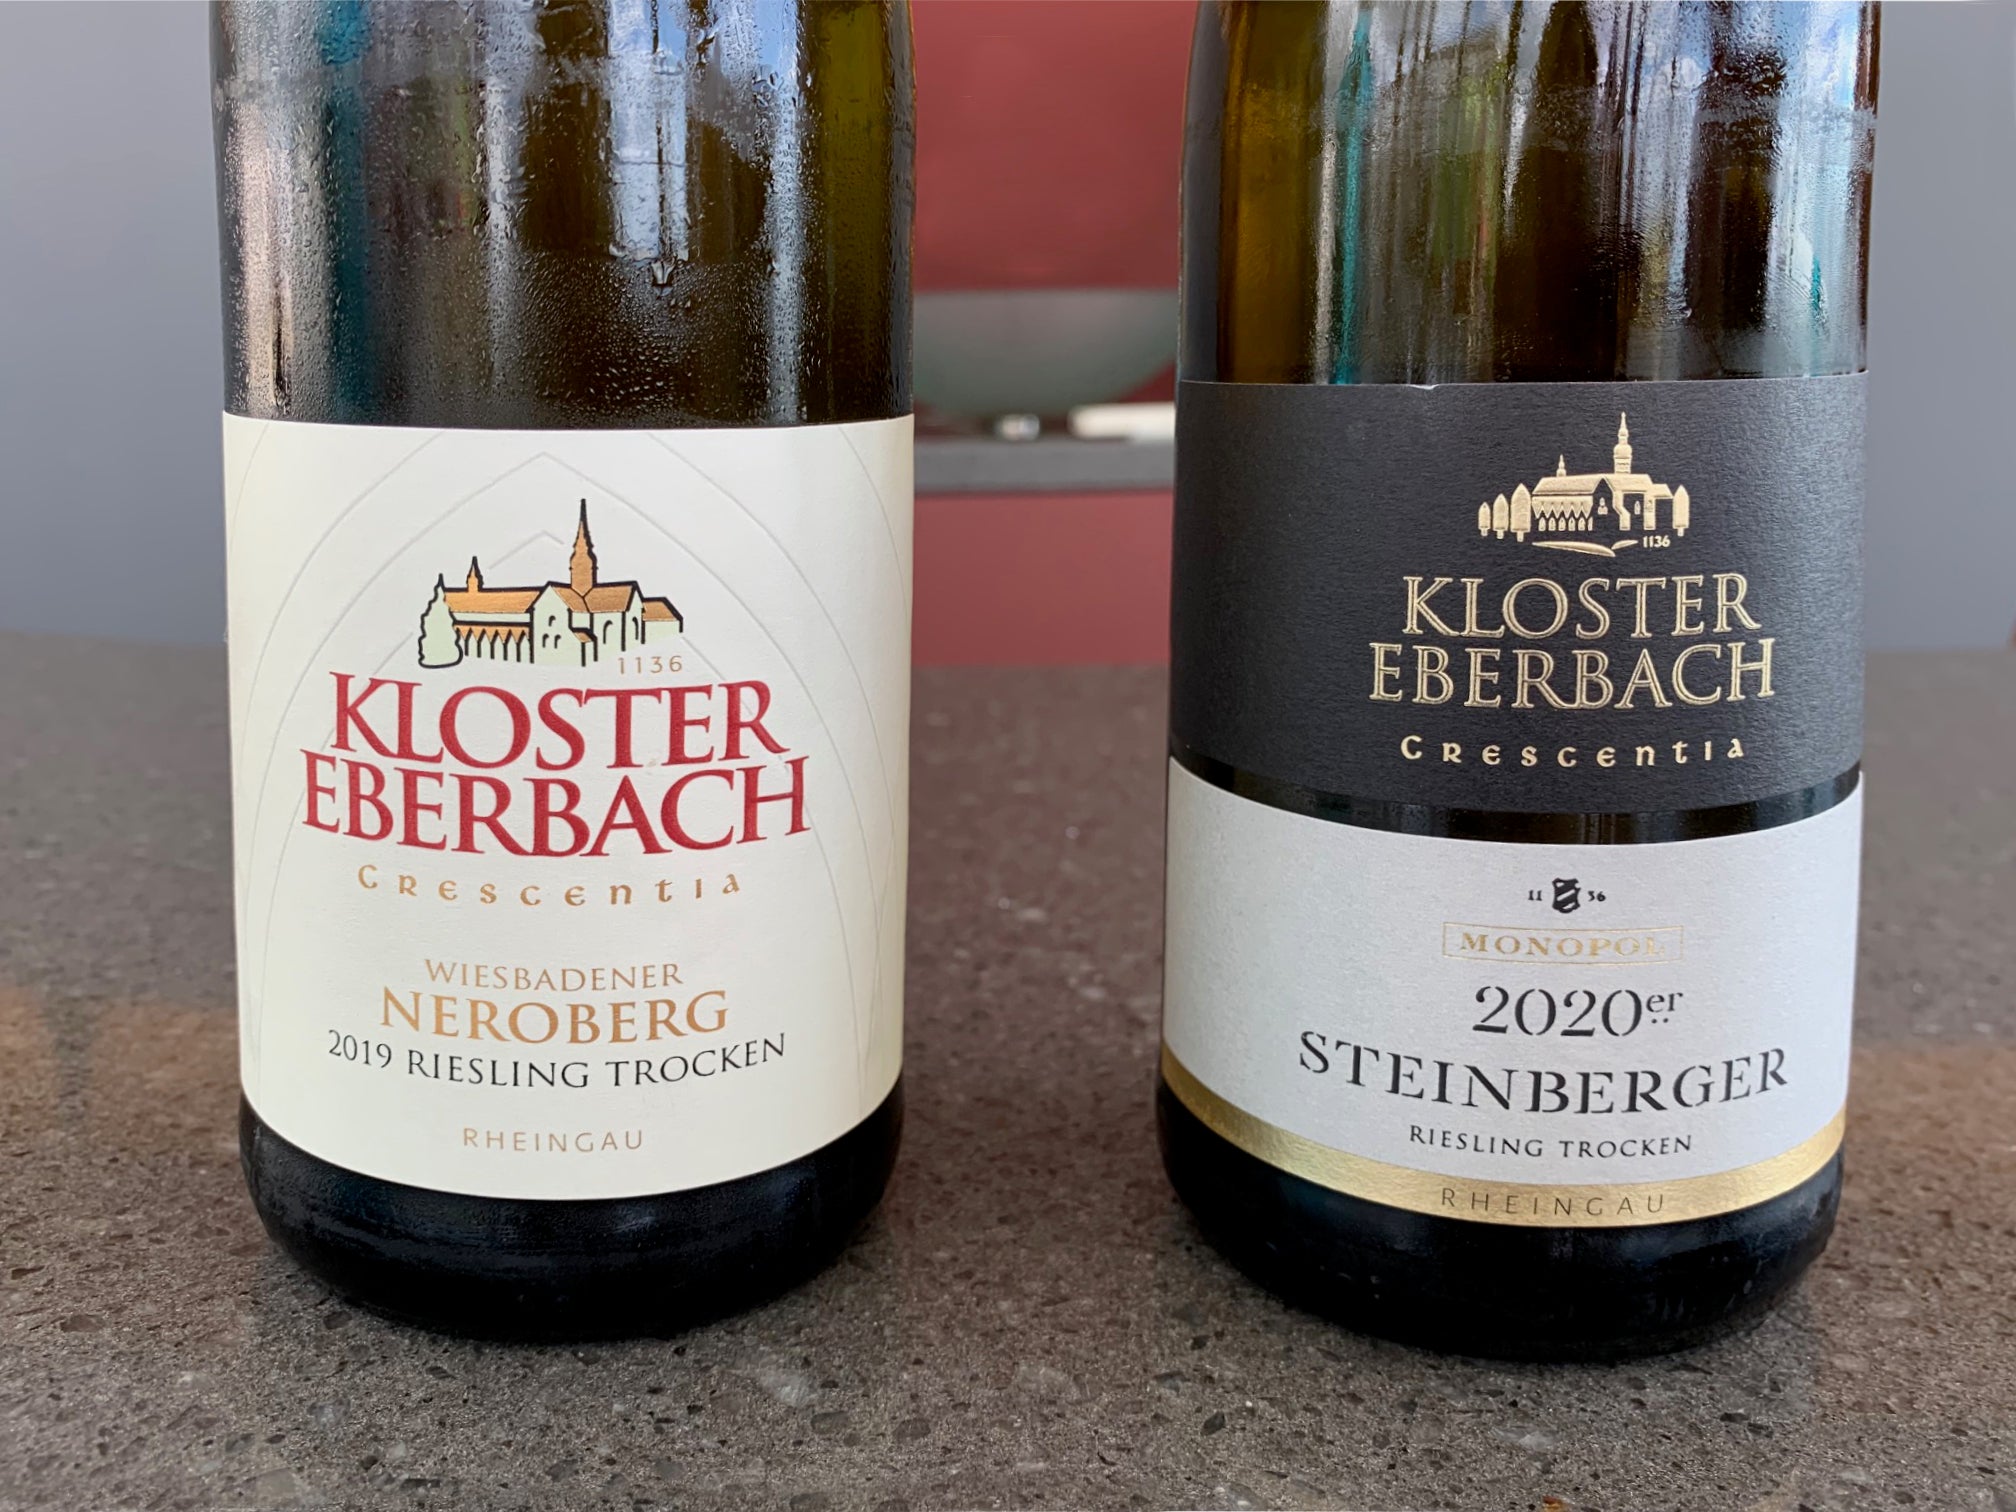 Kloster Eberbach’s Wiesbadener Neroberg 2019 Riesling Dry and 2020er Steinberger Riesling Dry